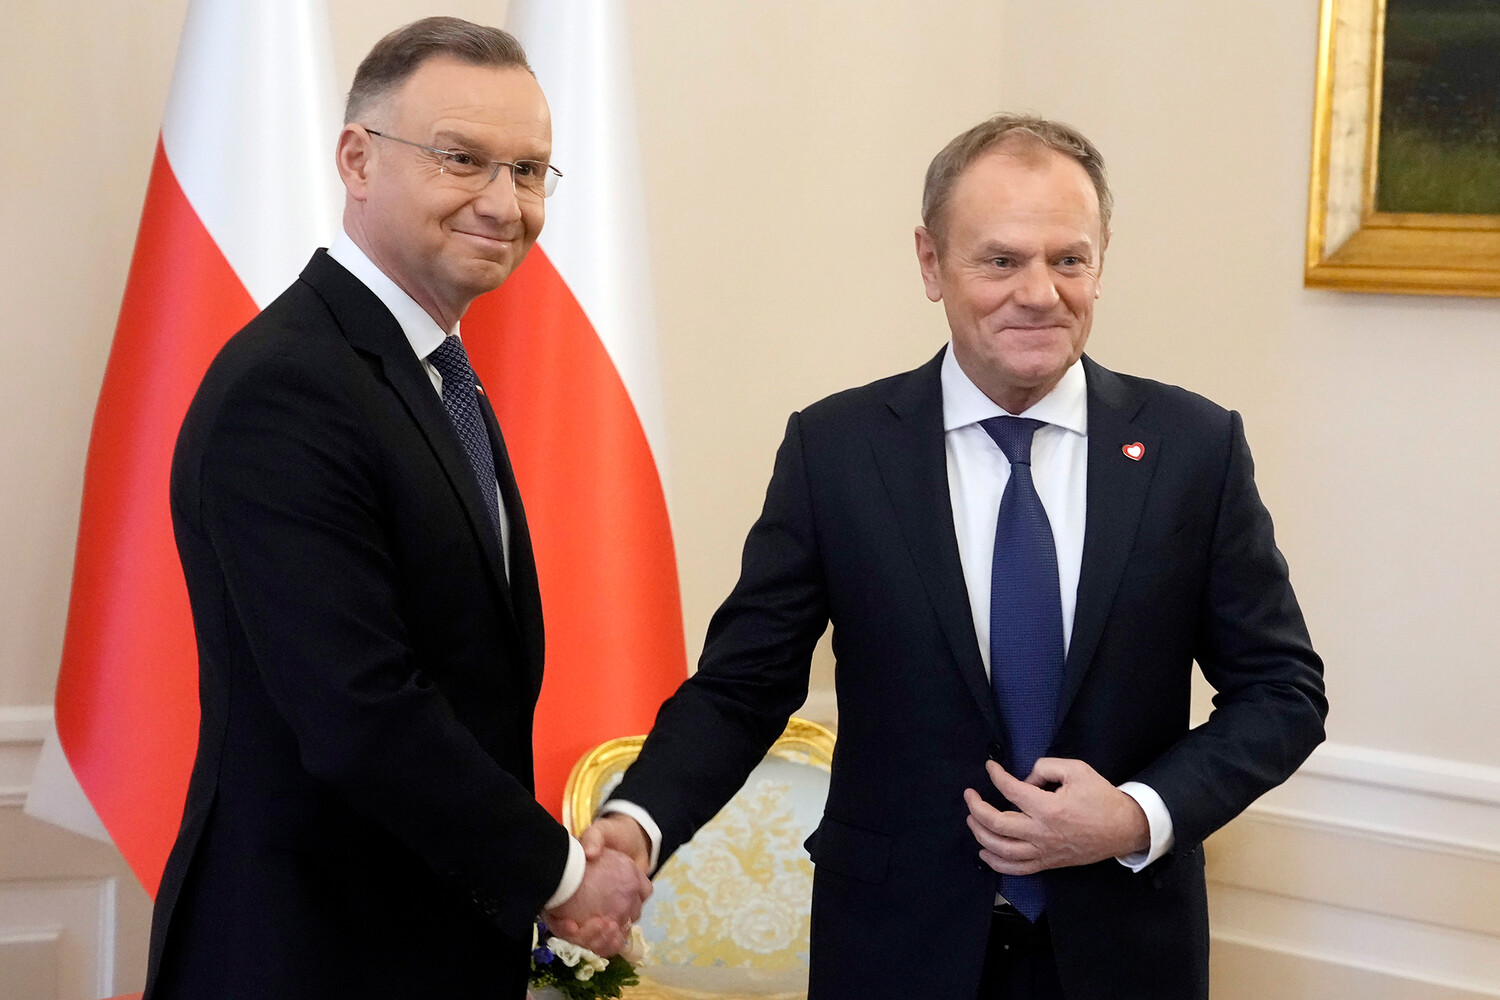 Президент Польши Дуда вызвал Туска на разговор о ядерном оружии в стране